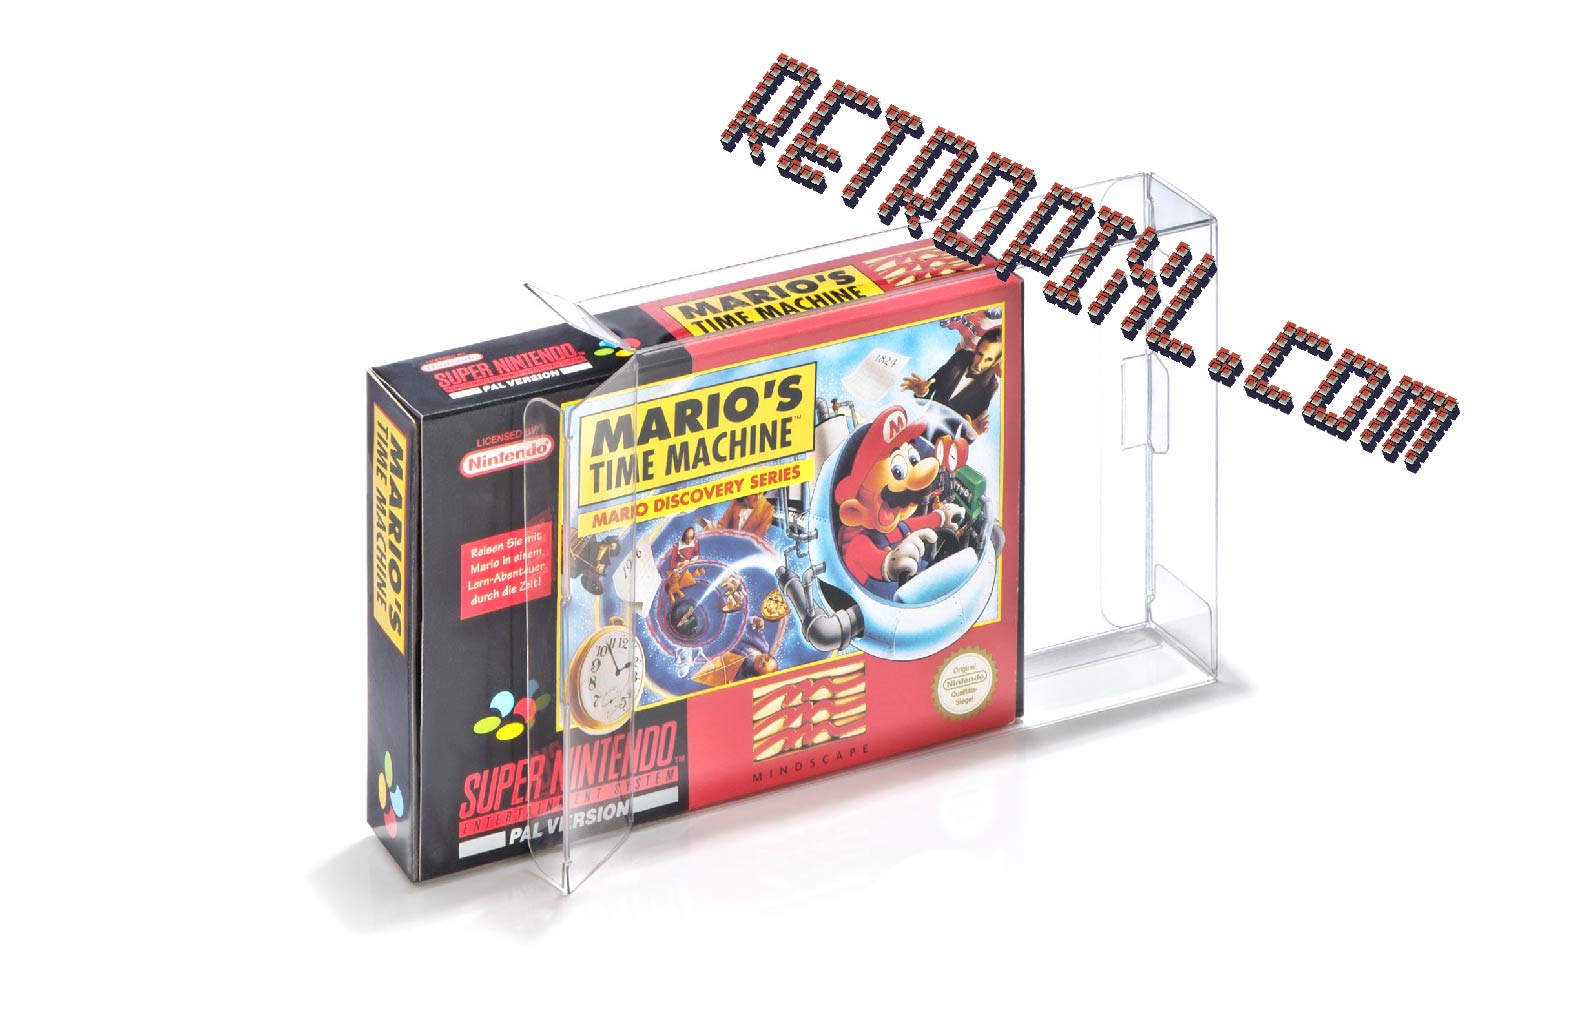 Retropixl retrogaming Nintendo SNES N64 Nintendo 64 Super Nintendo Super NES protective cases